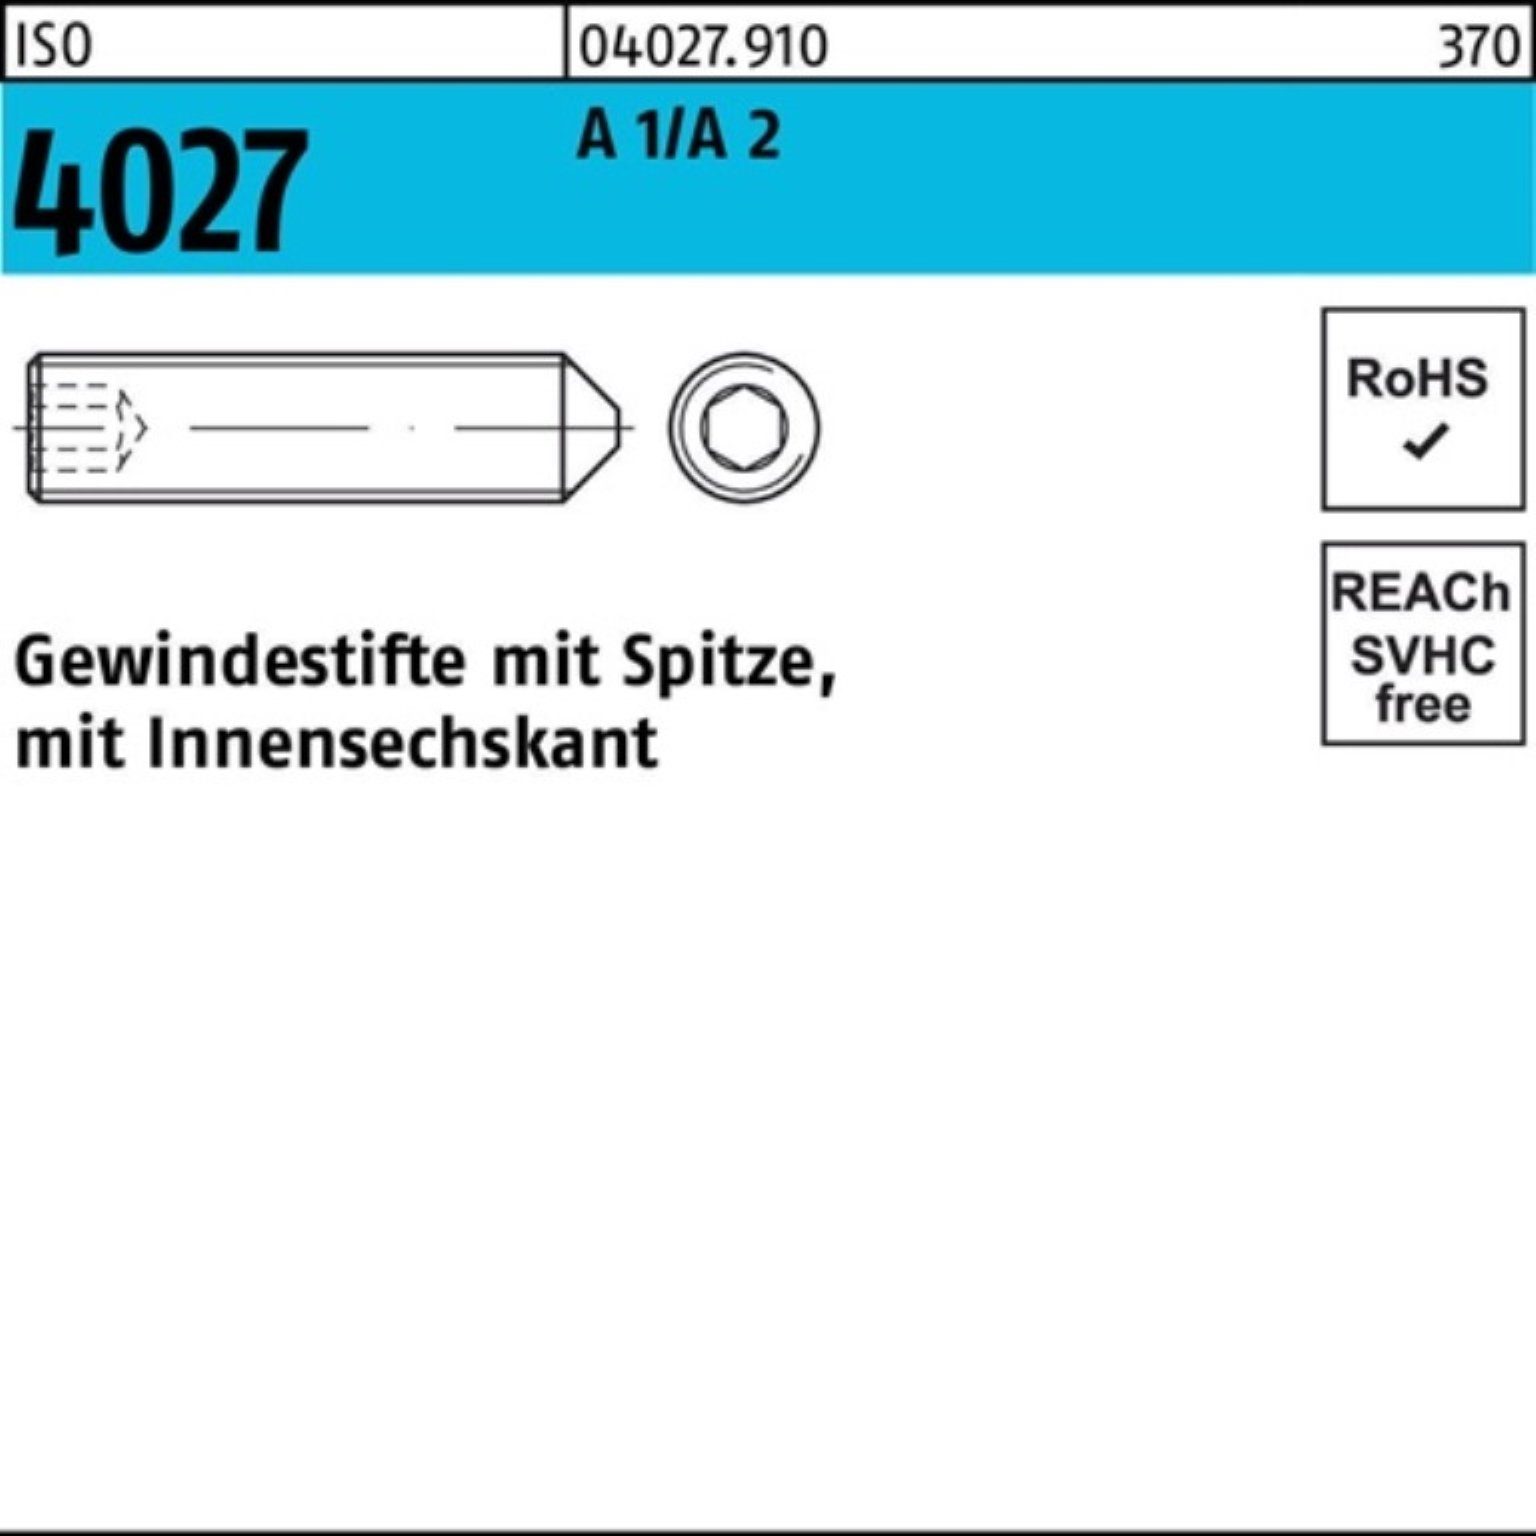 Pack Spitze/Innen-6kt 30 M4x 200 ISO 200er Gewindestift Reyher Stüc 4027 2 A Gewindebolzen